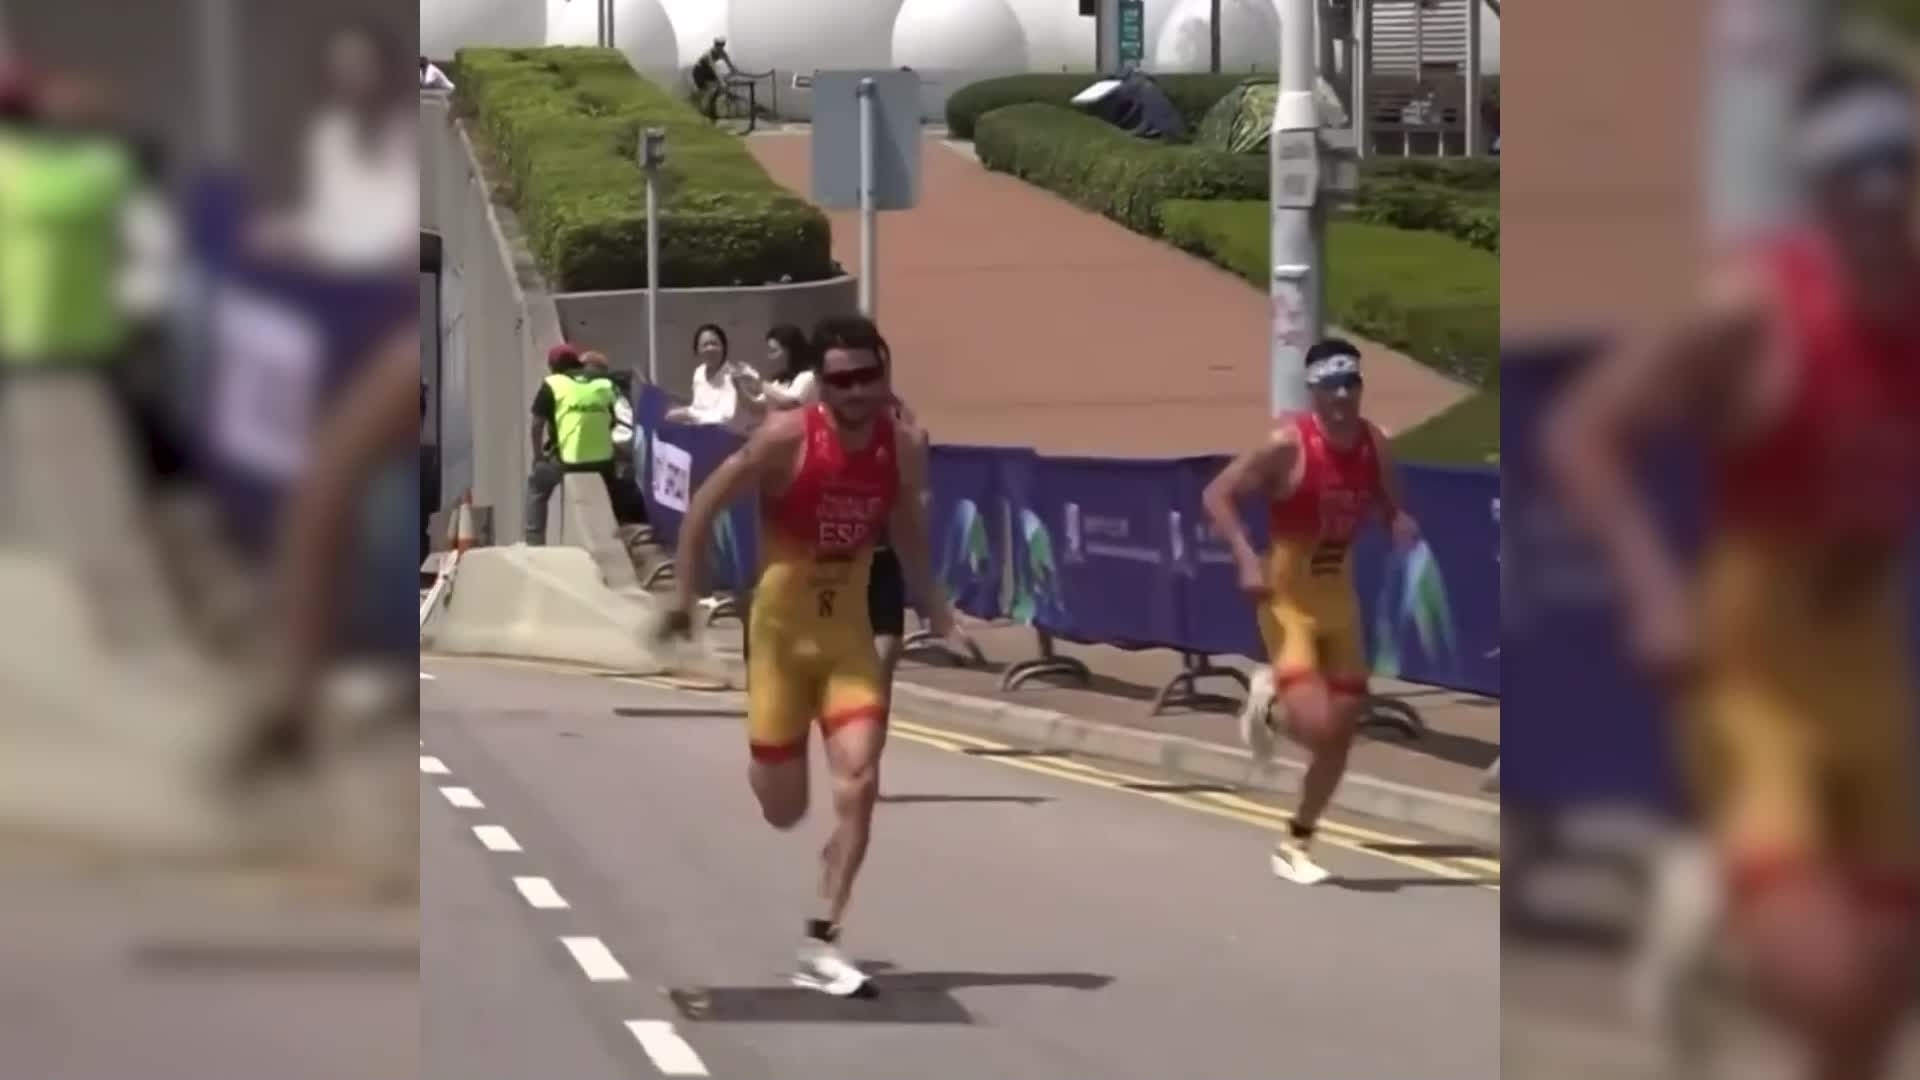 El triatleta malagueño dejó clavados a sus rivales, el español Antonio Serrat y el japonés Kenji Nener, con un demoledor cambio de ritmo a falta de 600 metros para la meta.